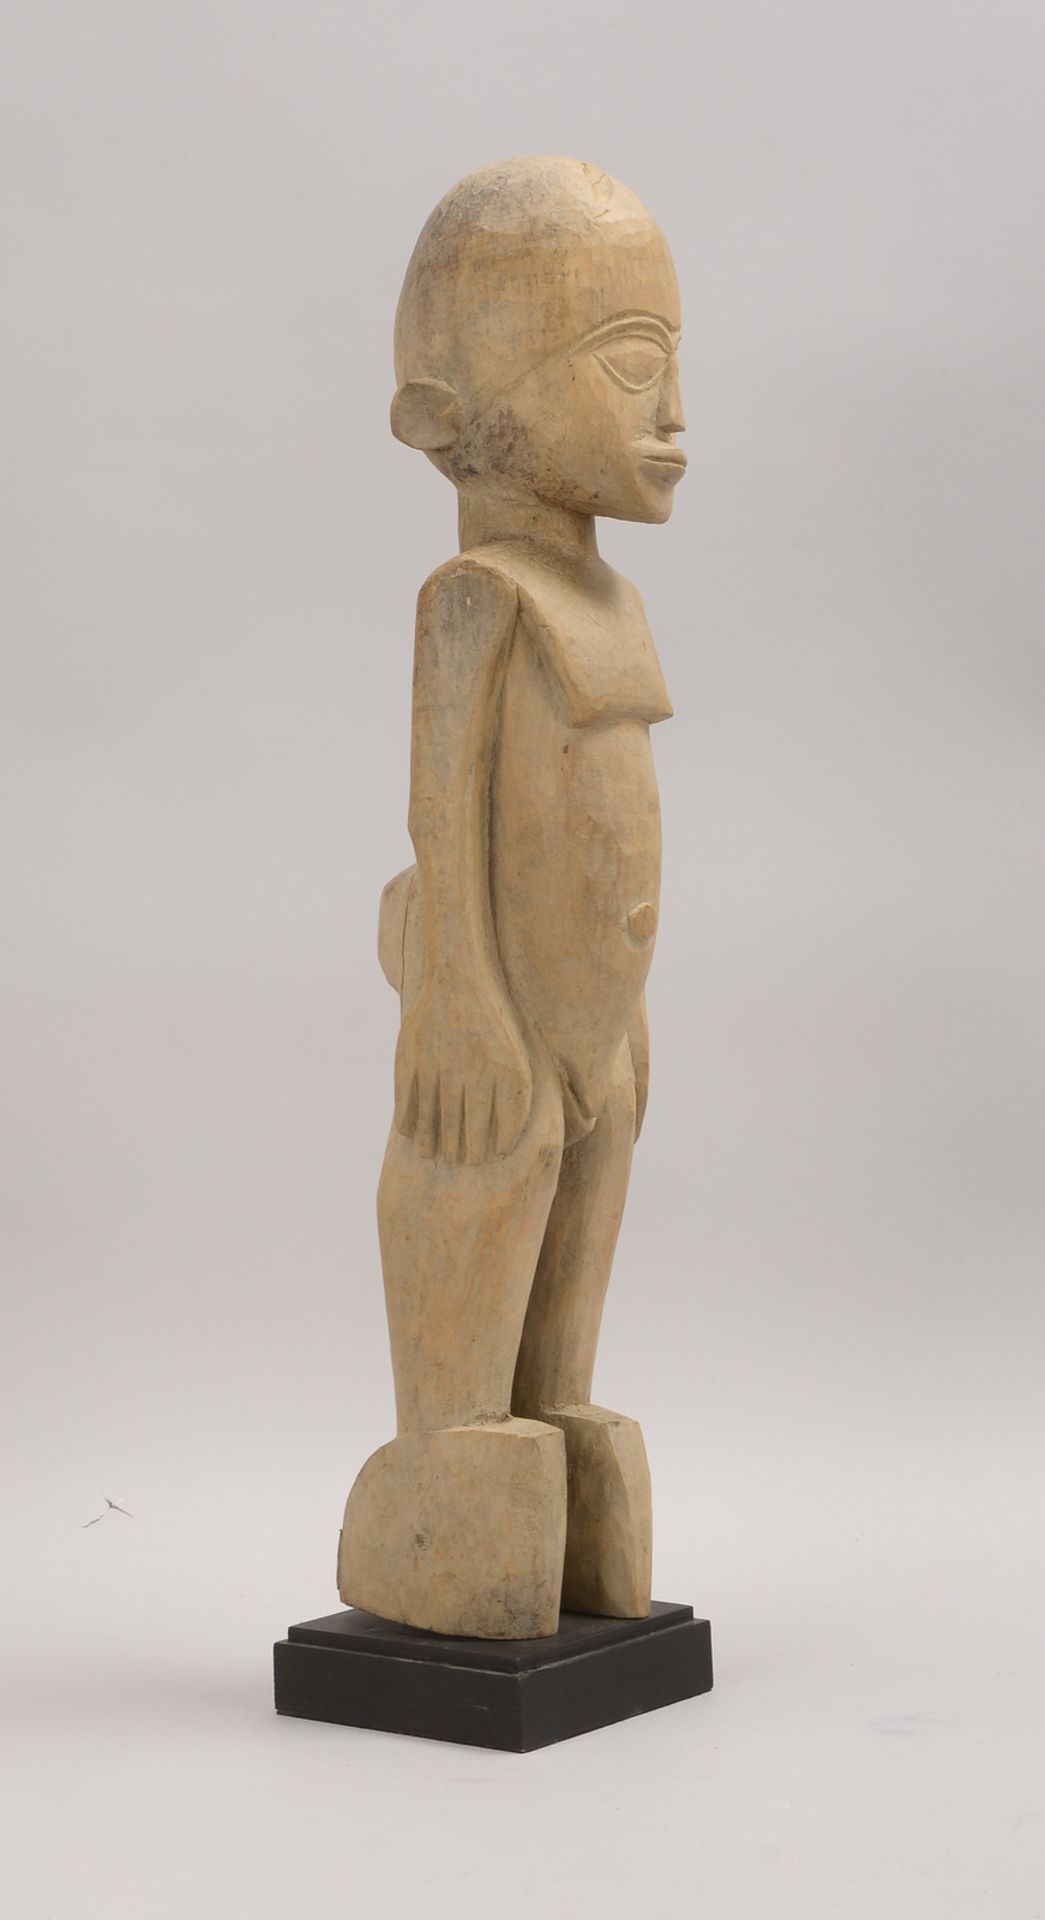 Holzstatue (Afrika - Ethnie nicht identifiziert), helles Holz, Höhe 61 cm - Bild 2 aus 2